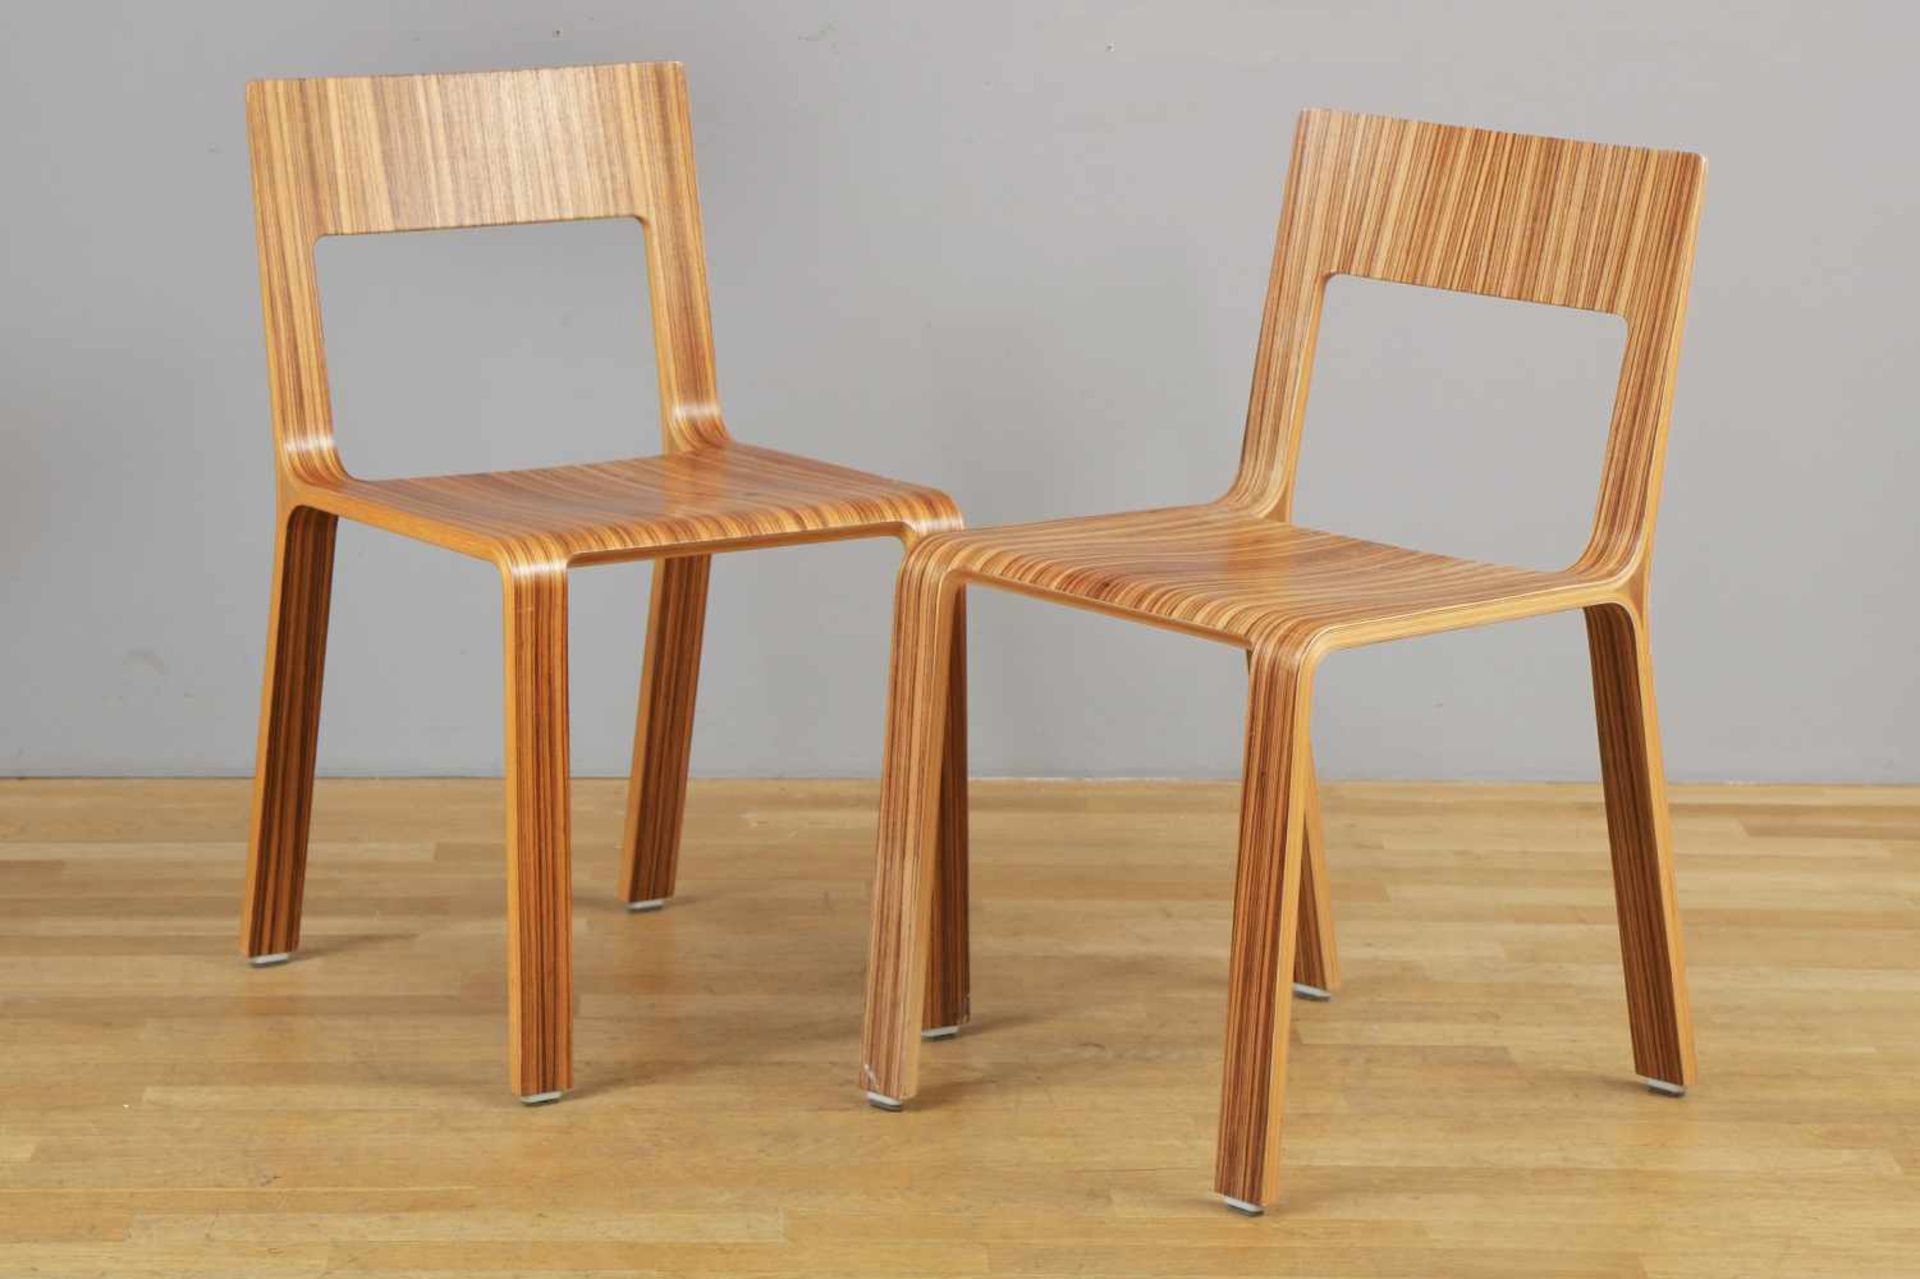 Paar Stühle unbekannter Hersteller/Entwurf, um 2000, Makassarholz